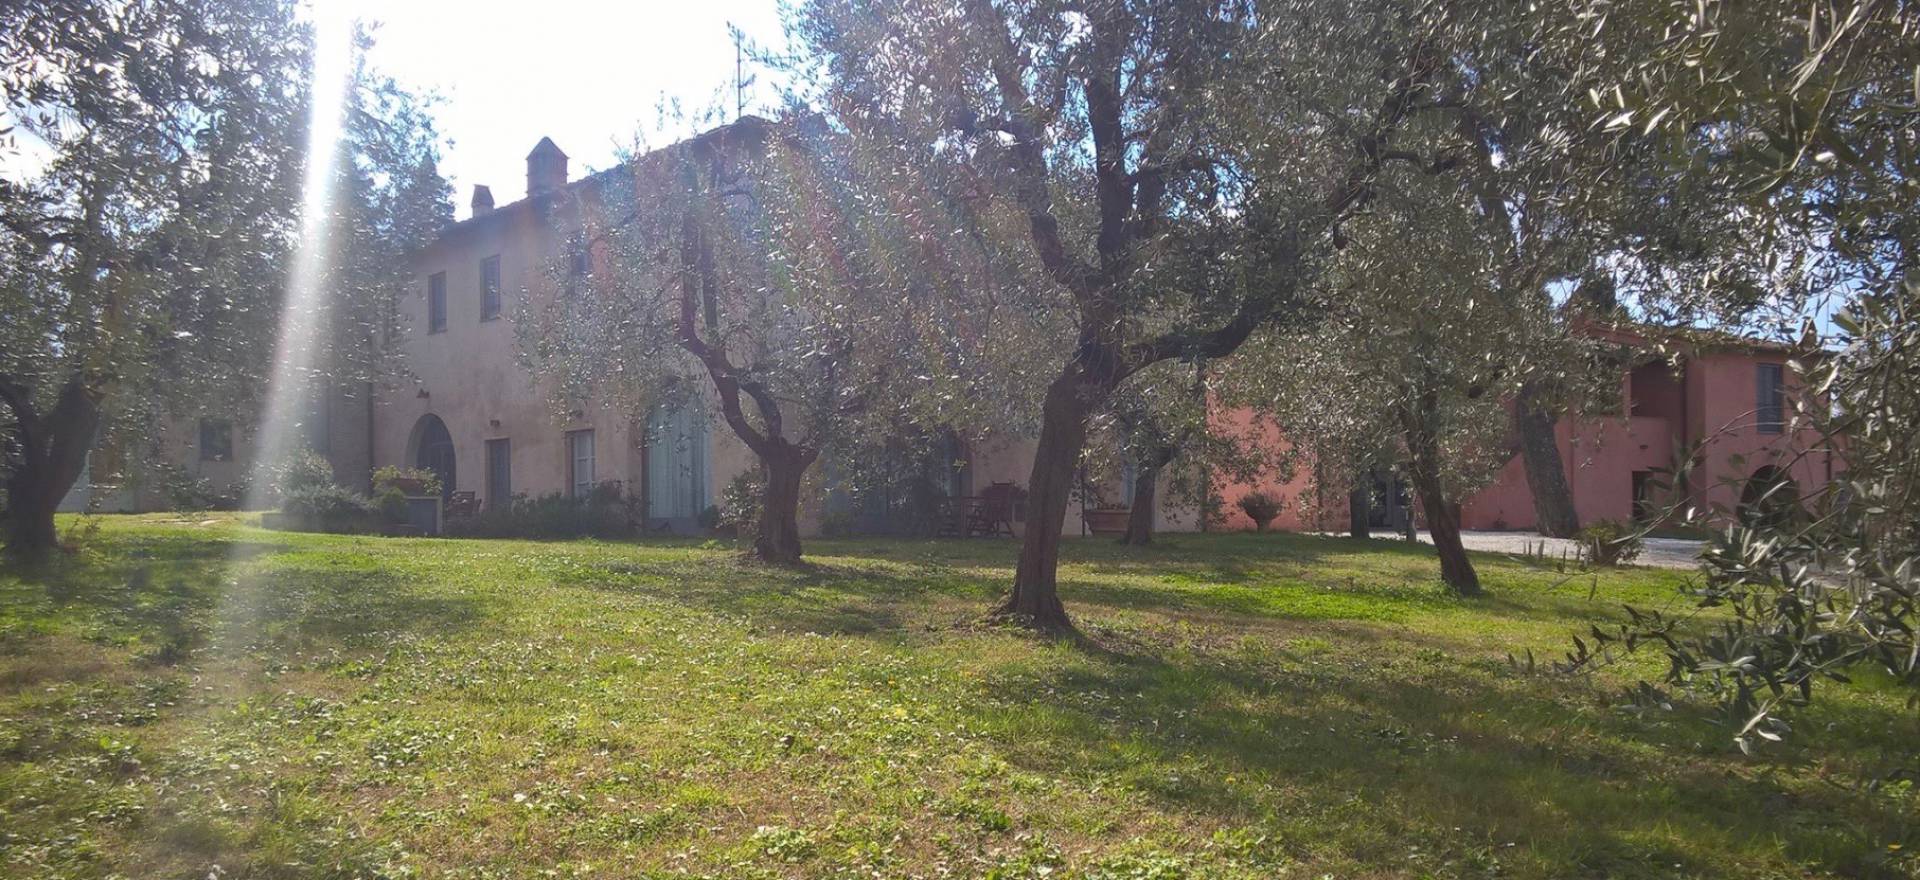 Agriturismo Toscane, kindvriendelijk en nabij Lucca